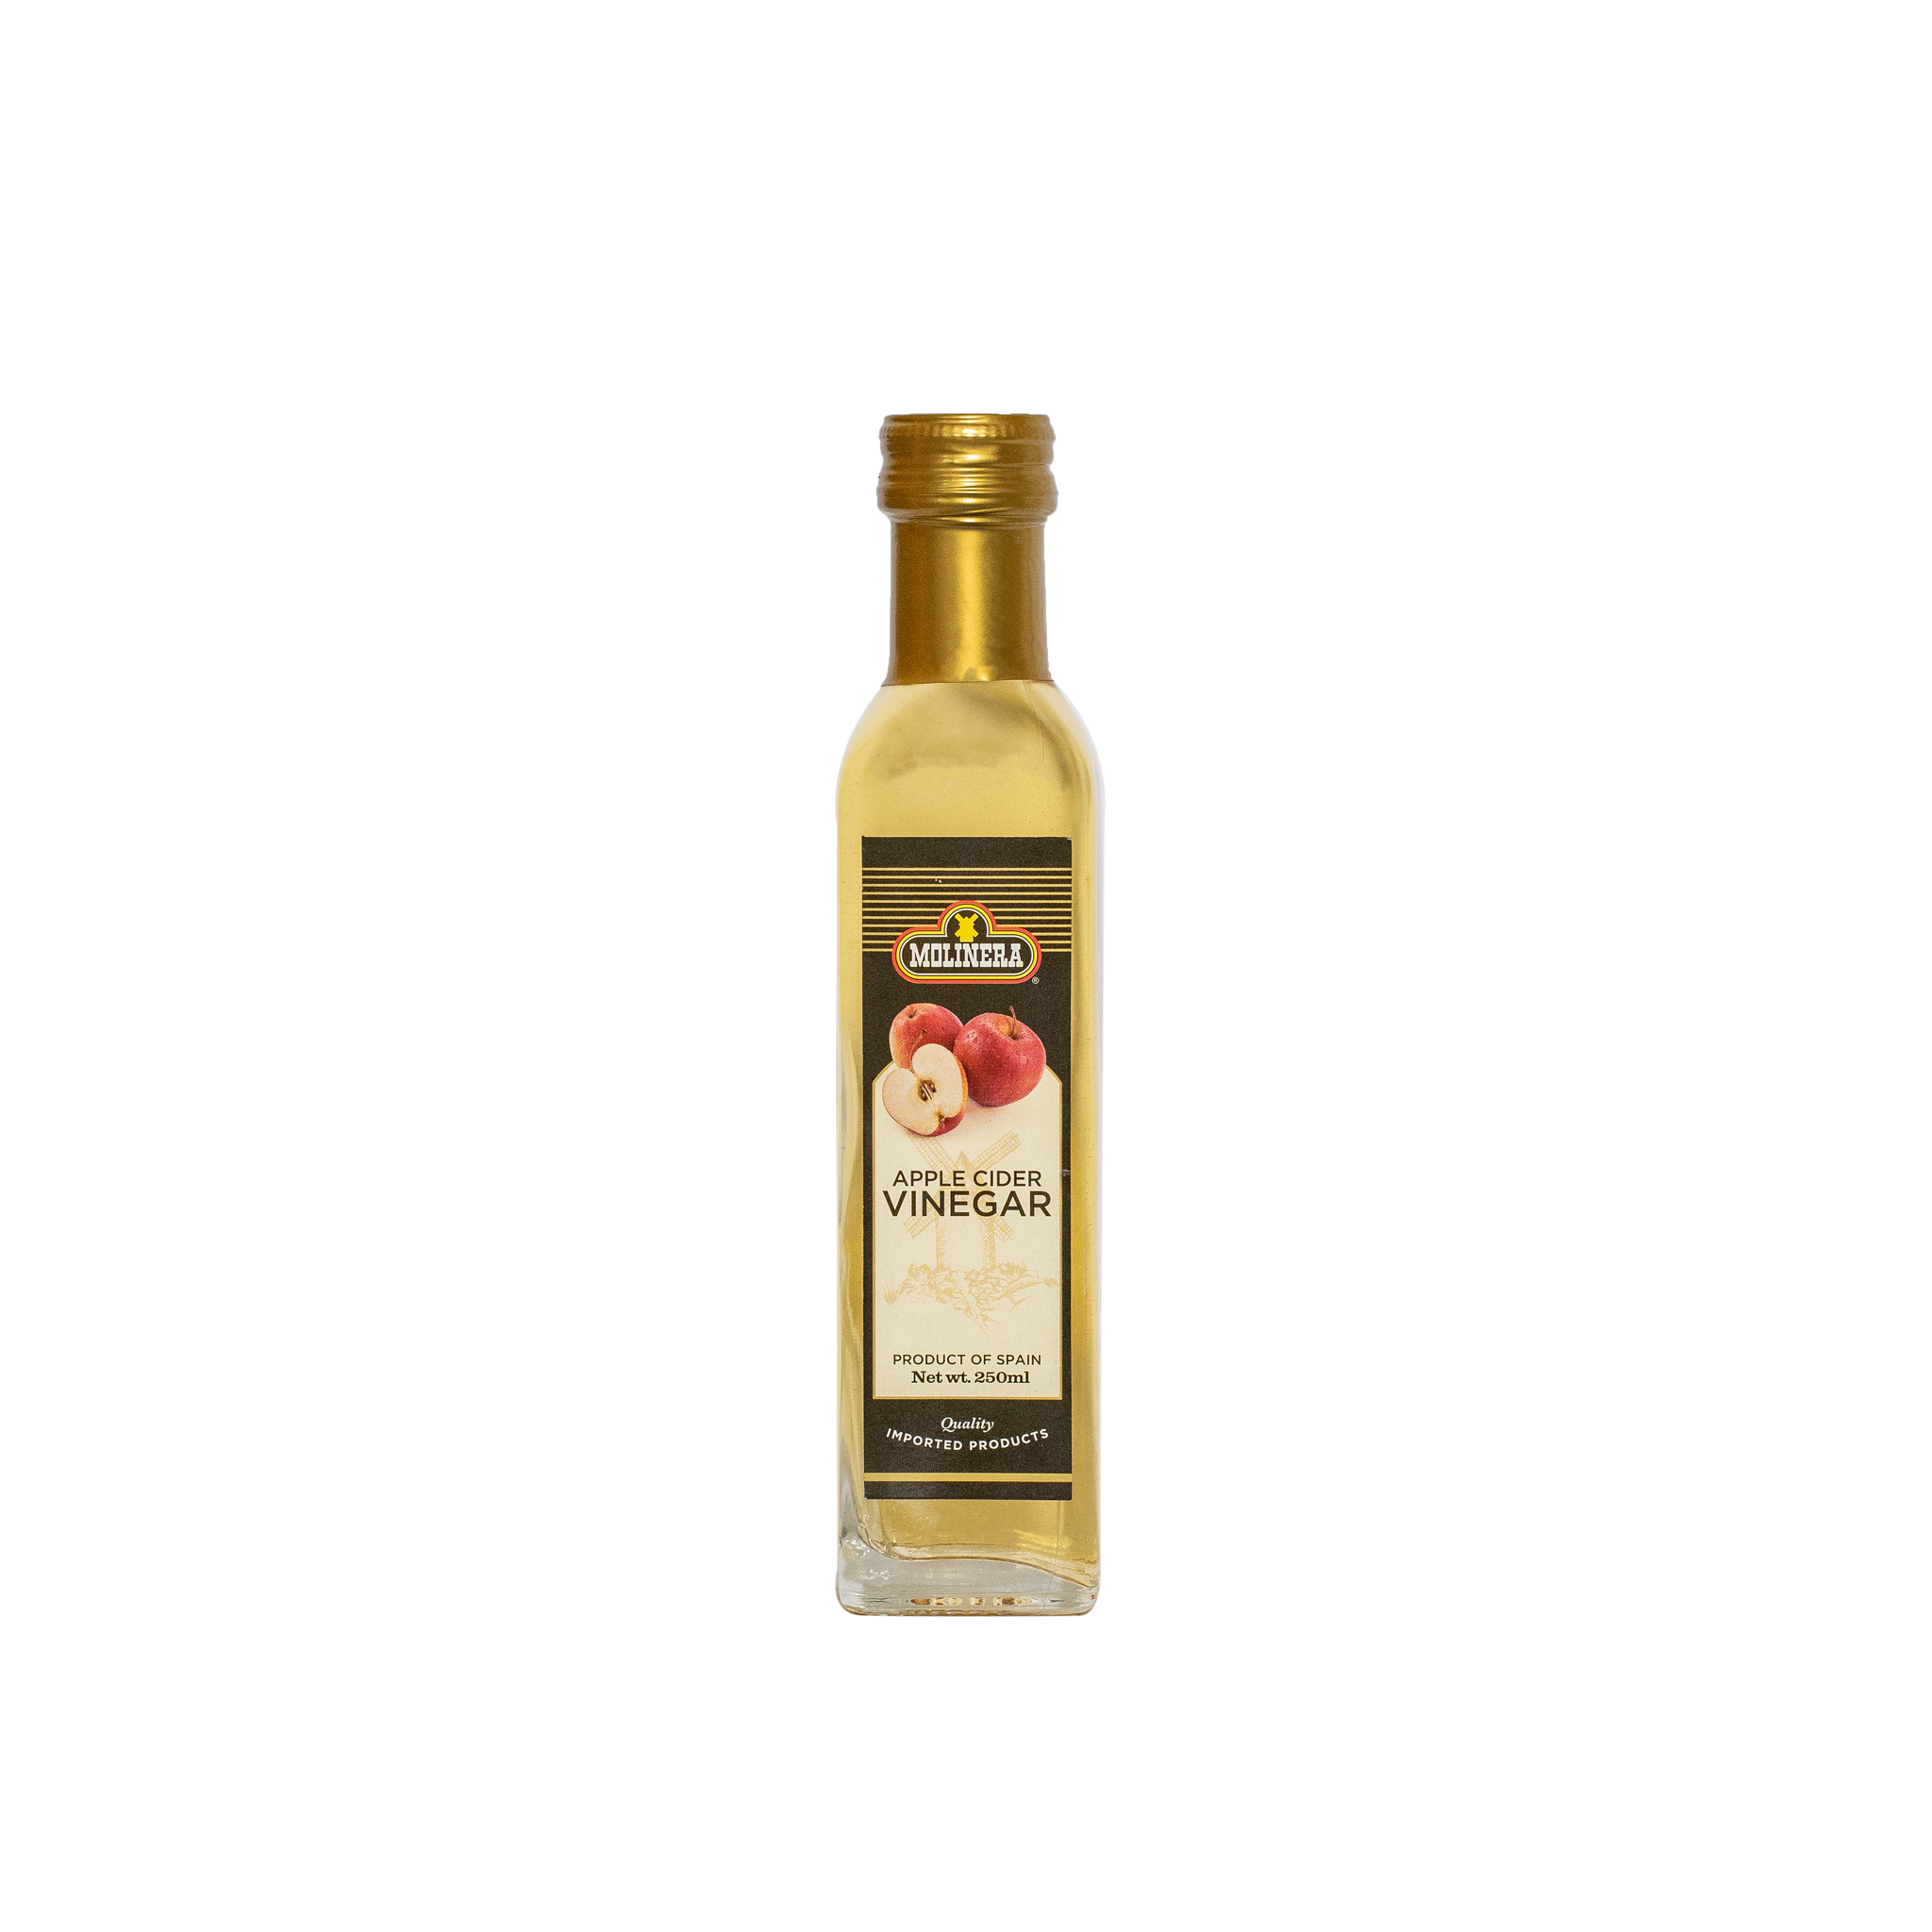 Molinera Apple Cider Vinegar